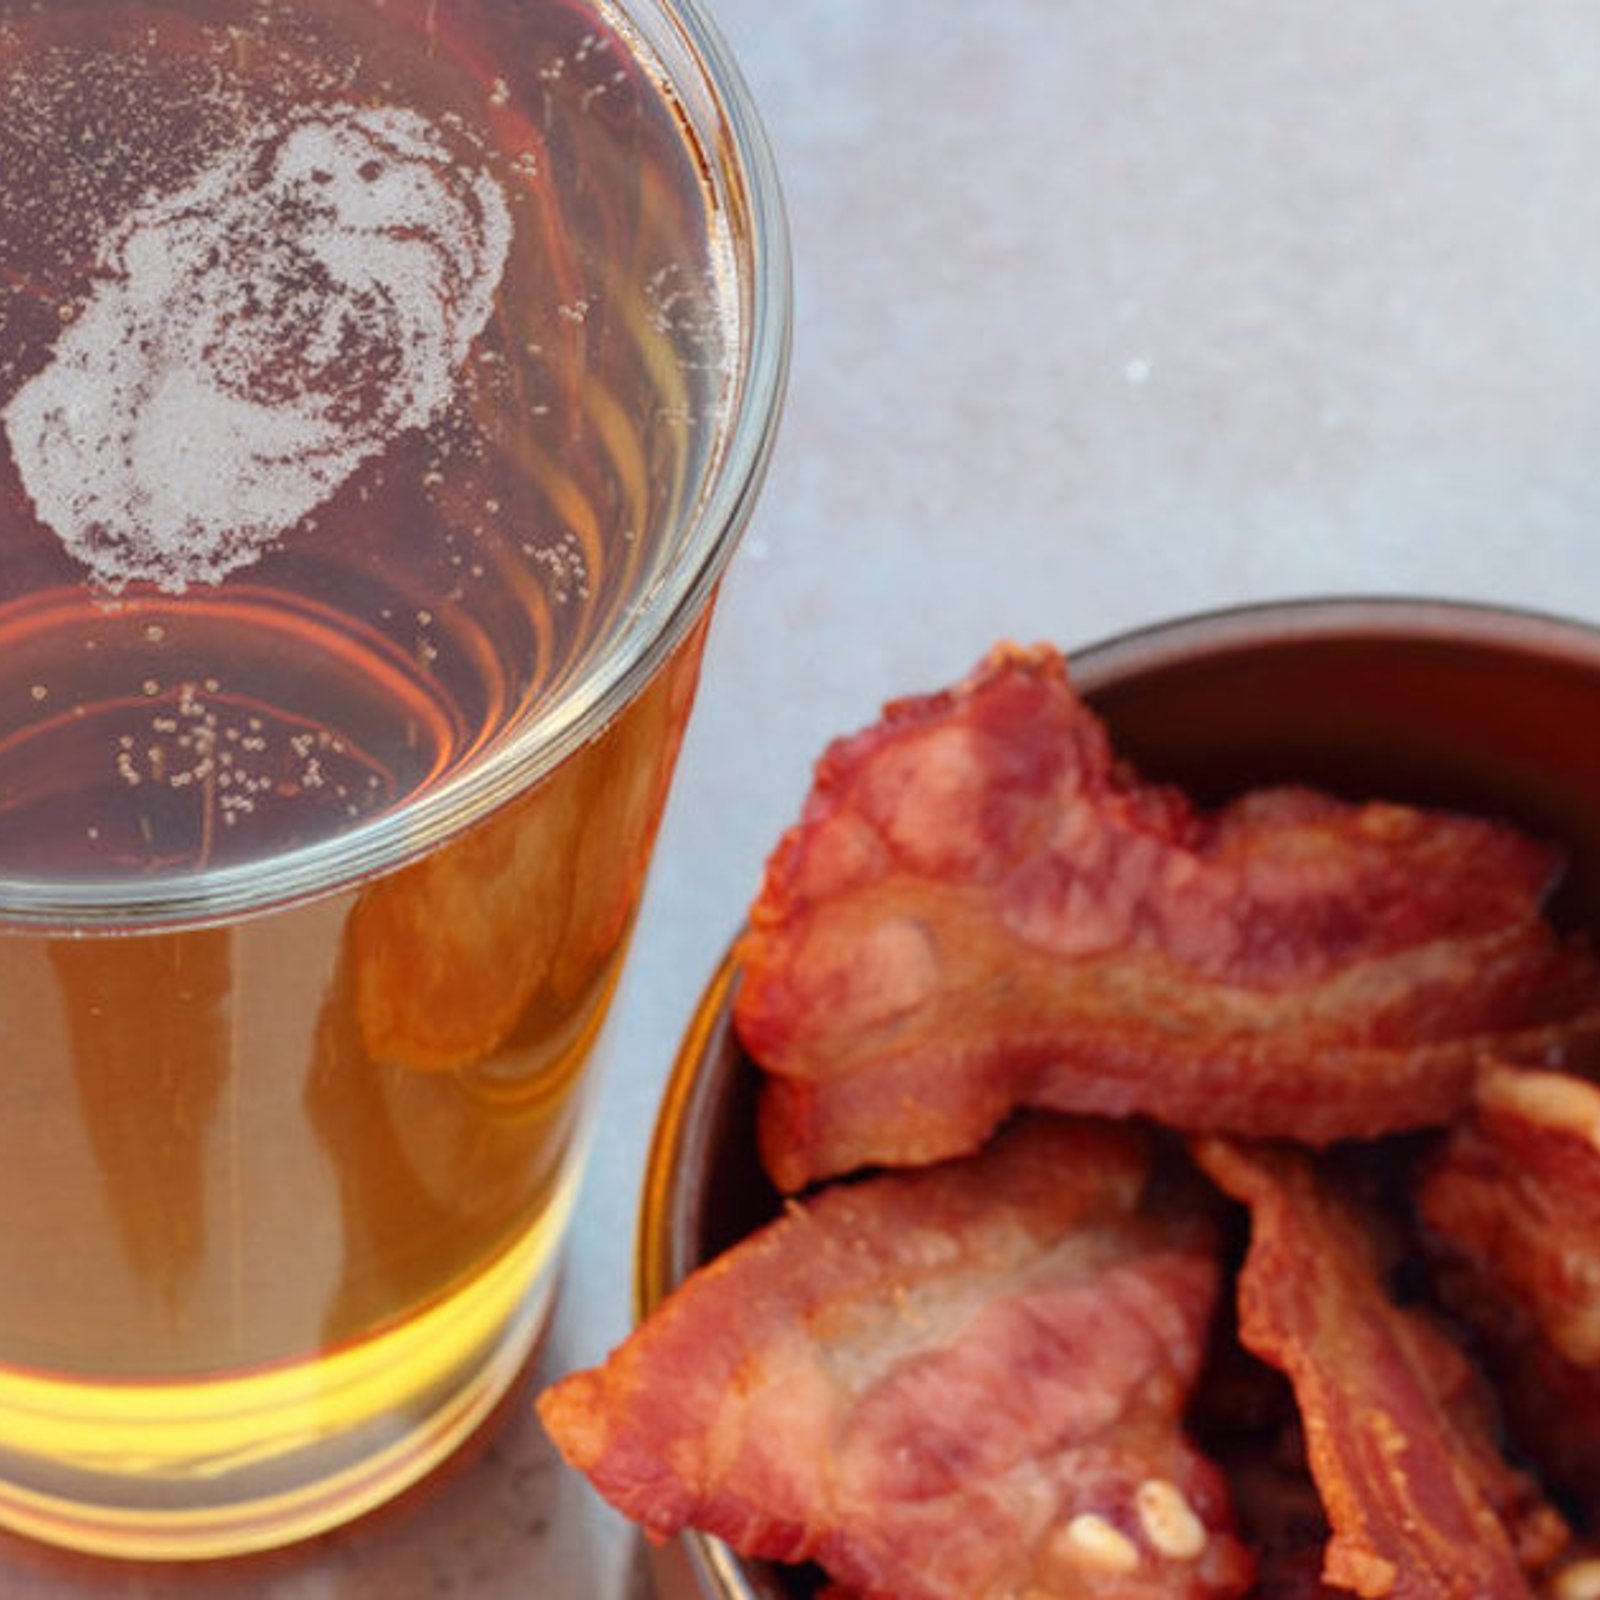 Réduire votre consommation de bacon et d’alcool pourrait abaisser votre risque de cancer de 40%